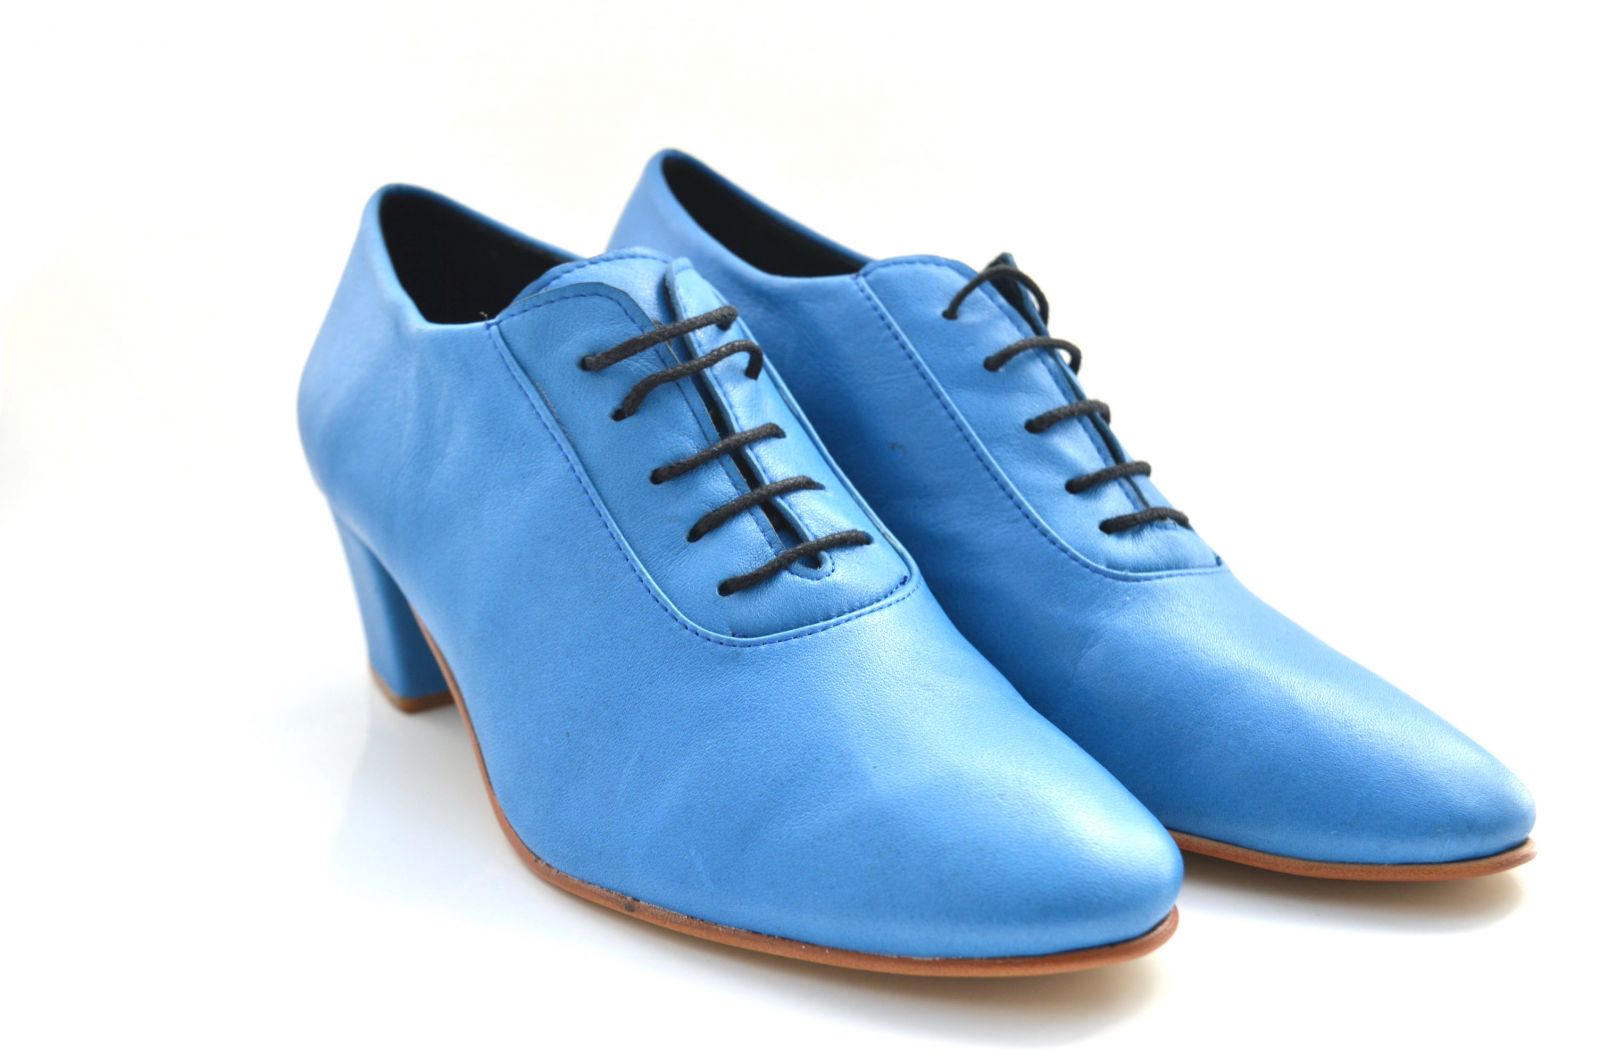 Γυναικείο παπούτσι tango κλειστού τύπου από πολύ μαλακό μπλε δέρμα